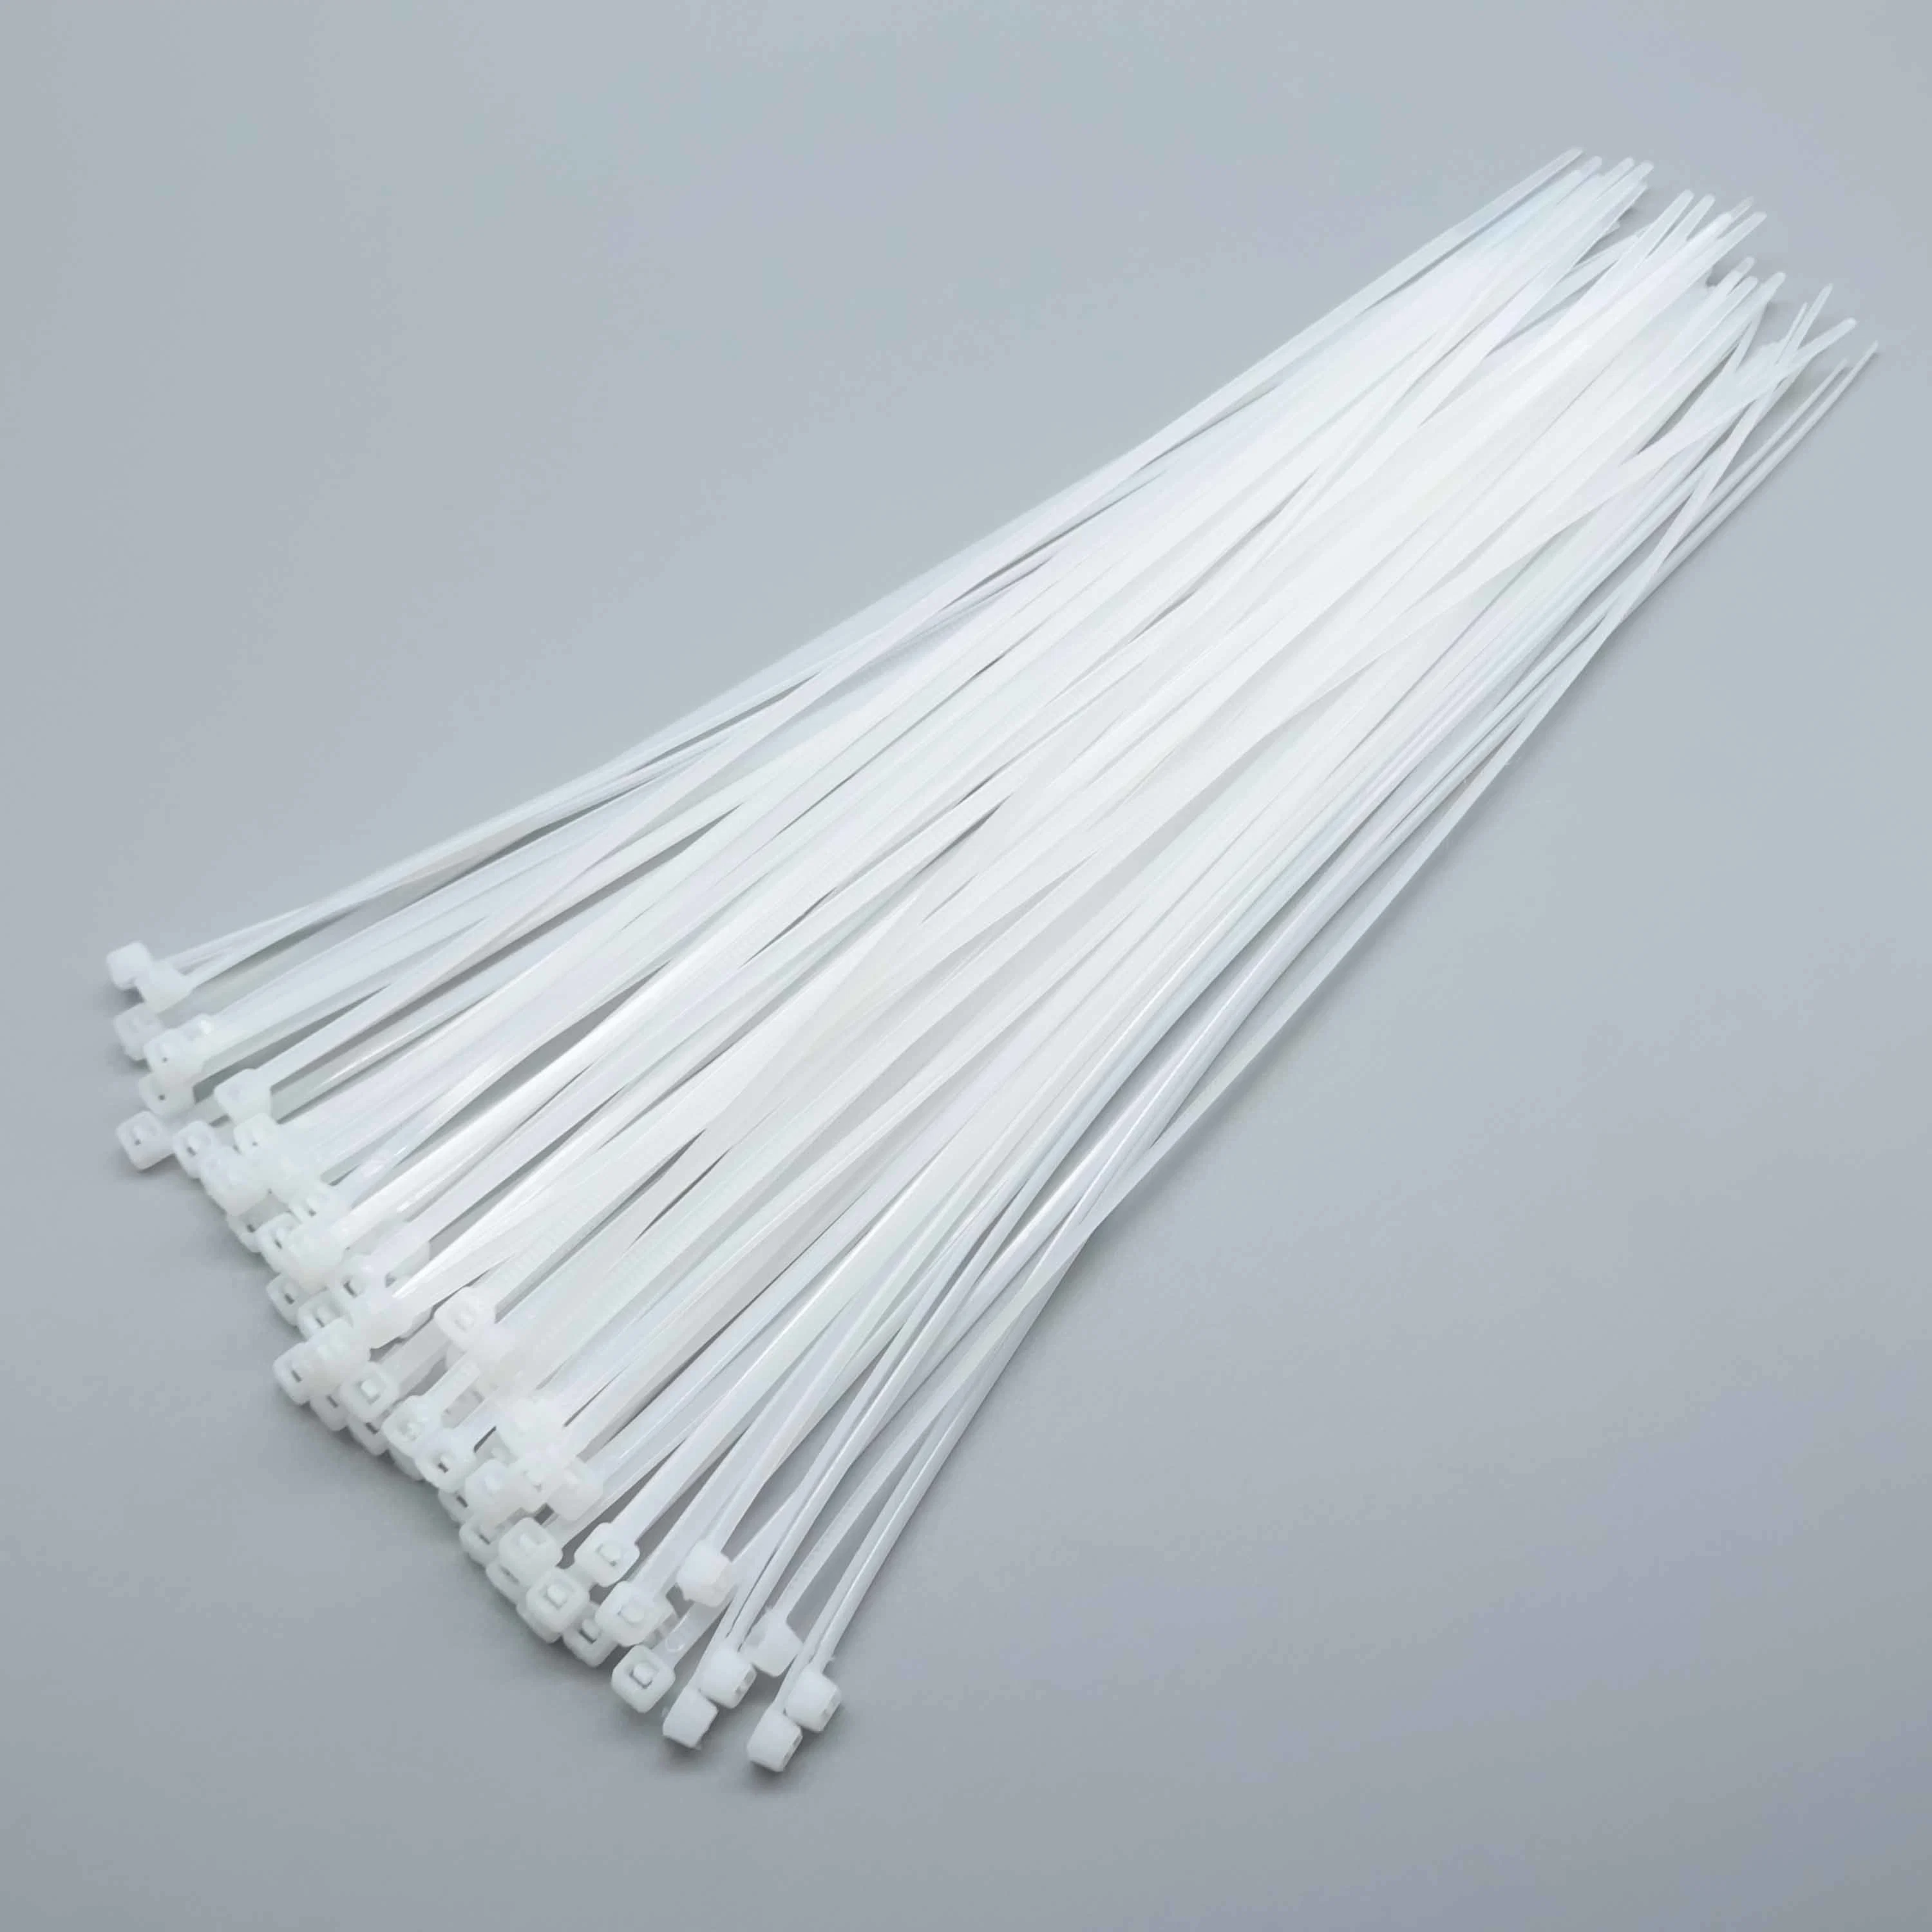 Multicolor Autoblocantes regulables de bridas de nylon resistencia UV Cable Cable Flexible de uniones de cremallera correa